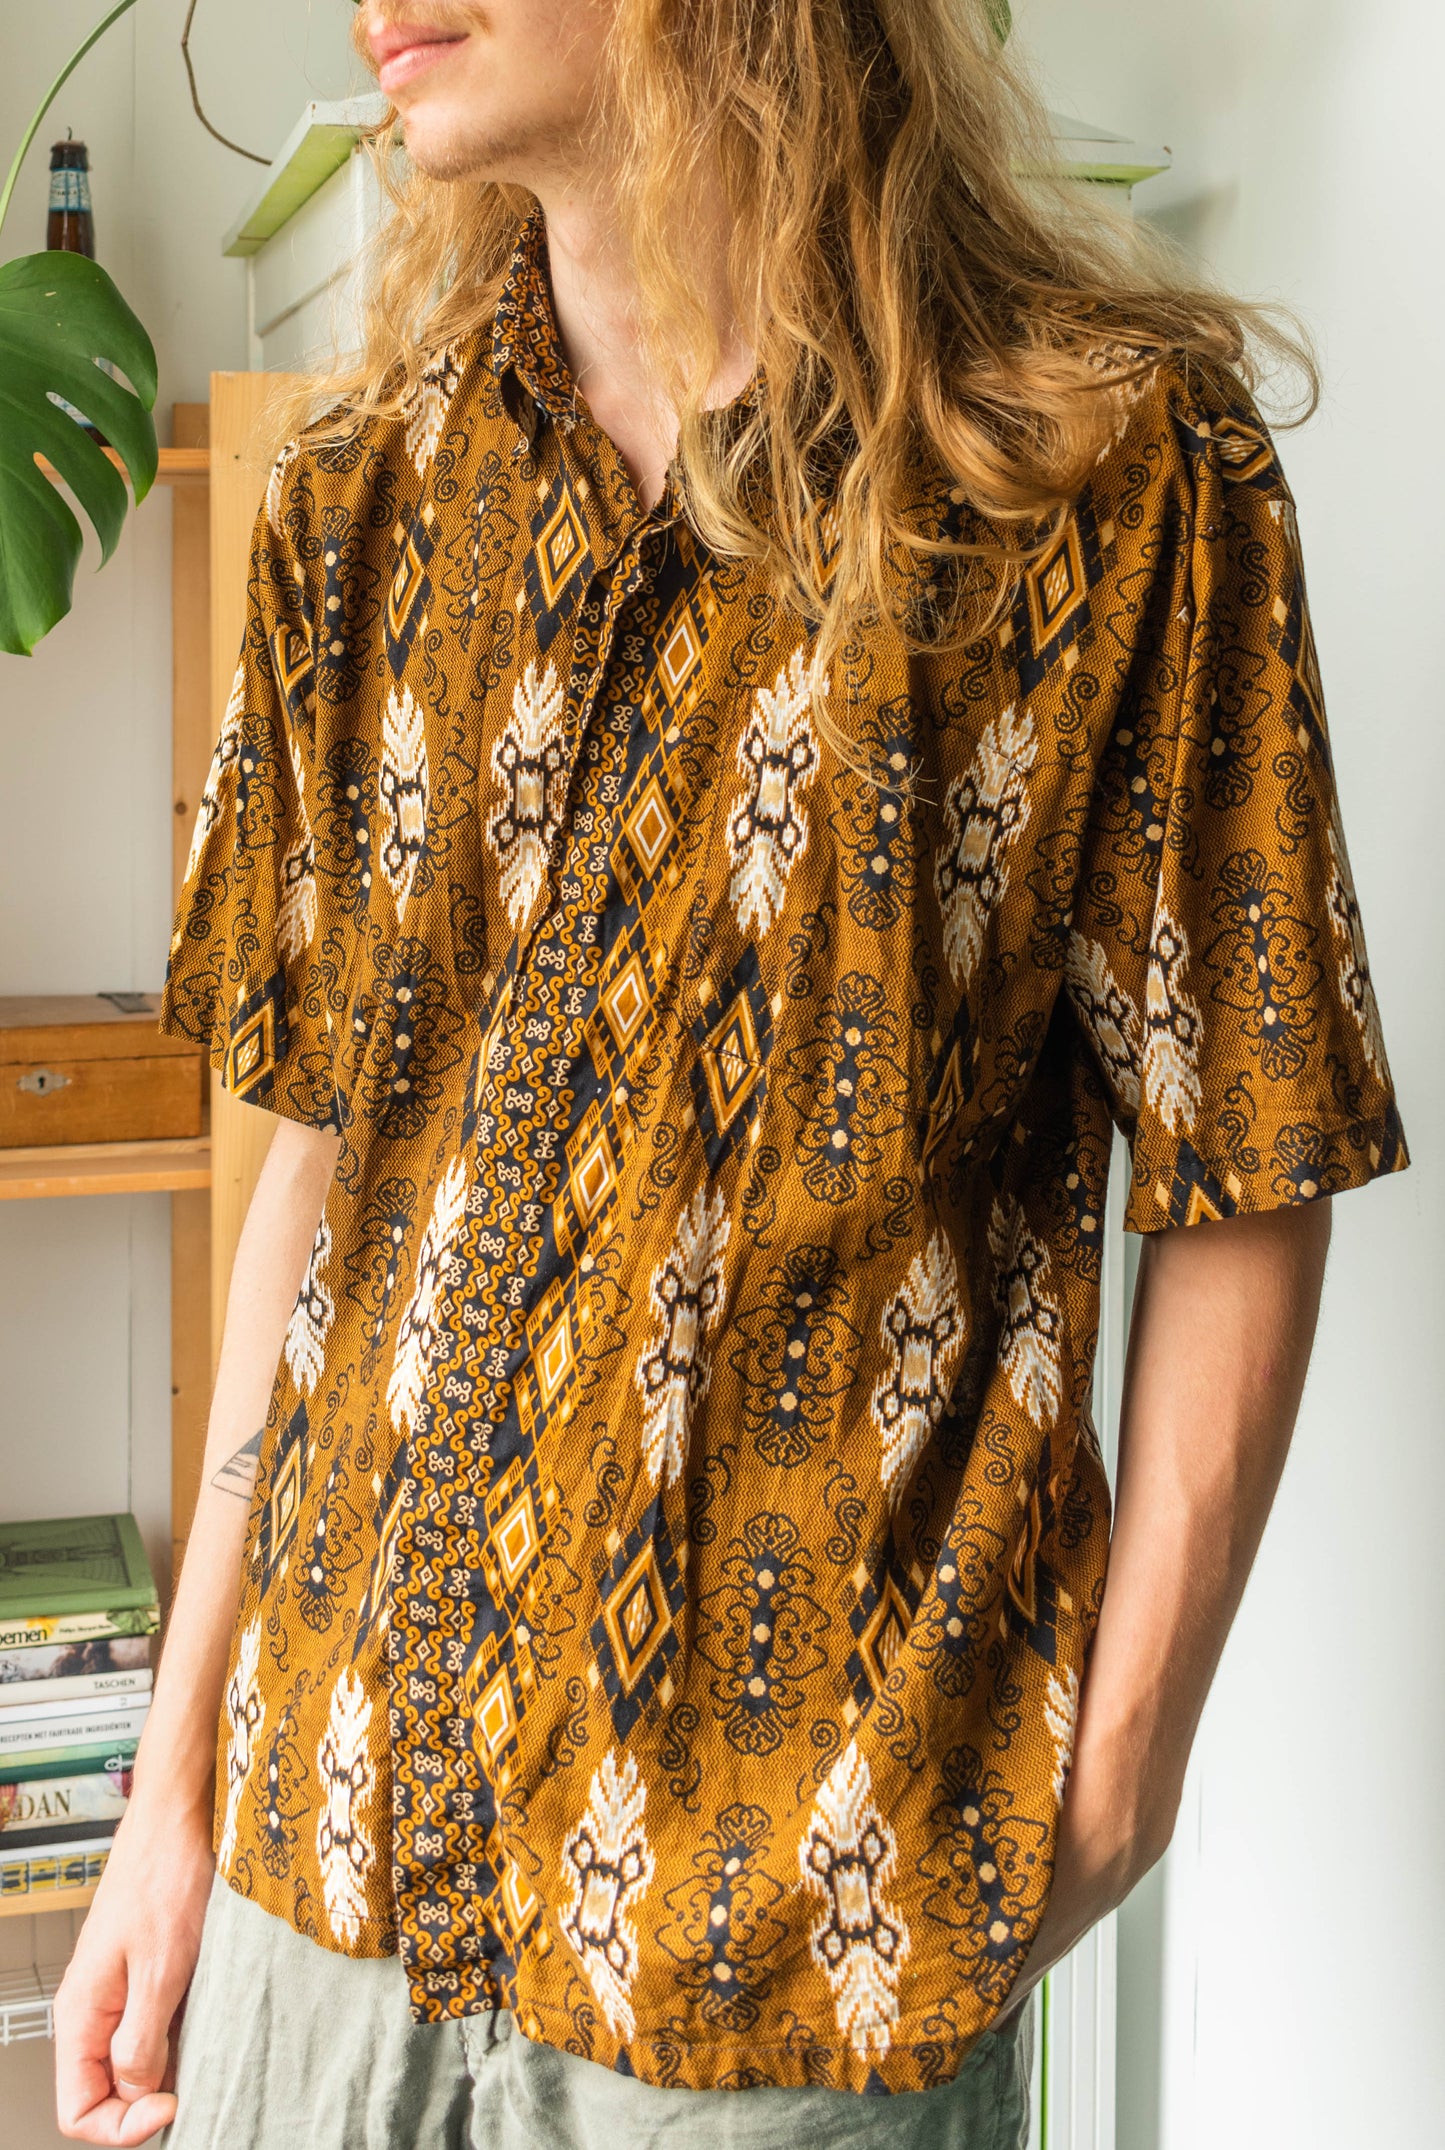 NEW IN! Batik blouse